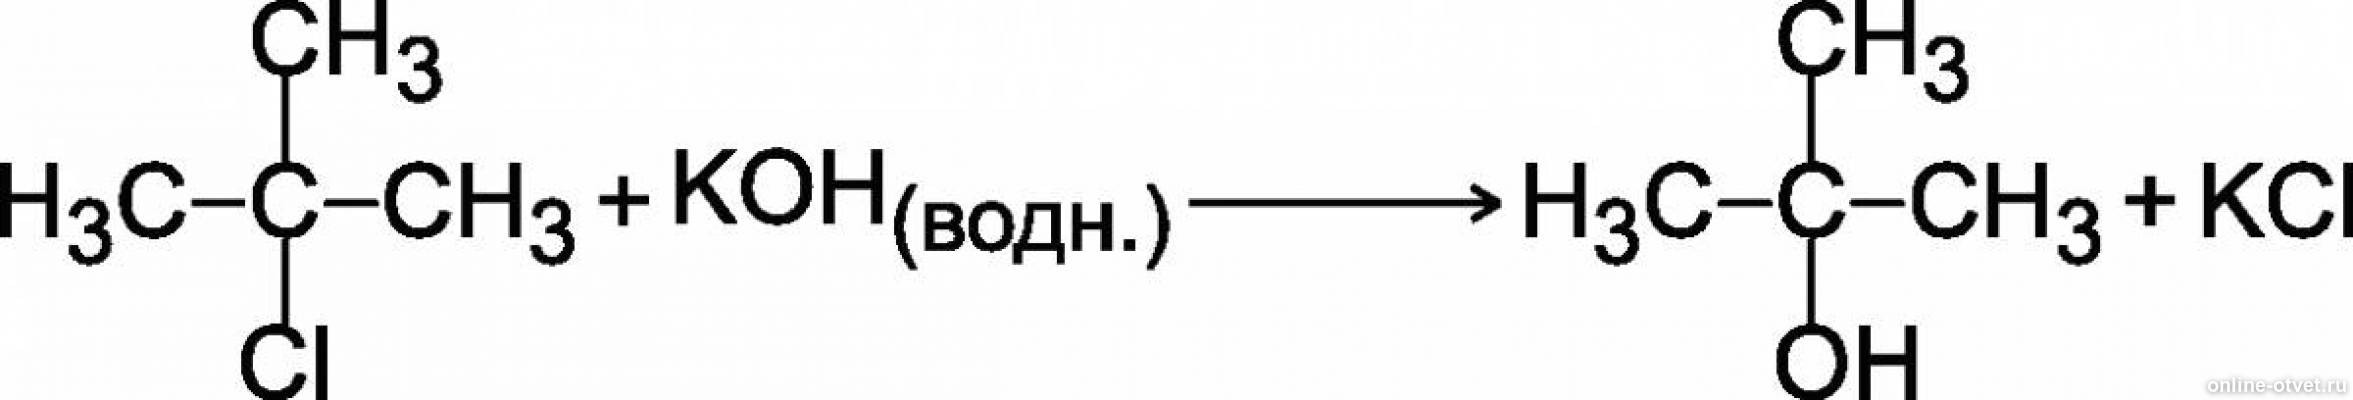 Кг кон. 2 Метилпропан и хлор реакция. 2 Хлор 2 метилпропан NAOH. NAOH спиртовой раствор реакции.